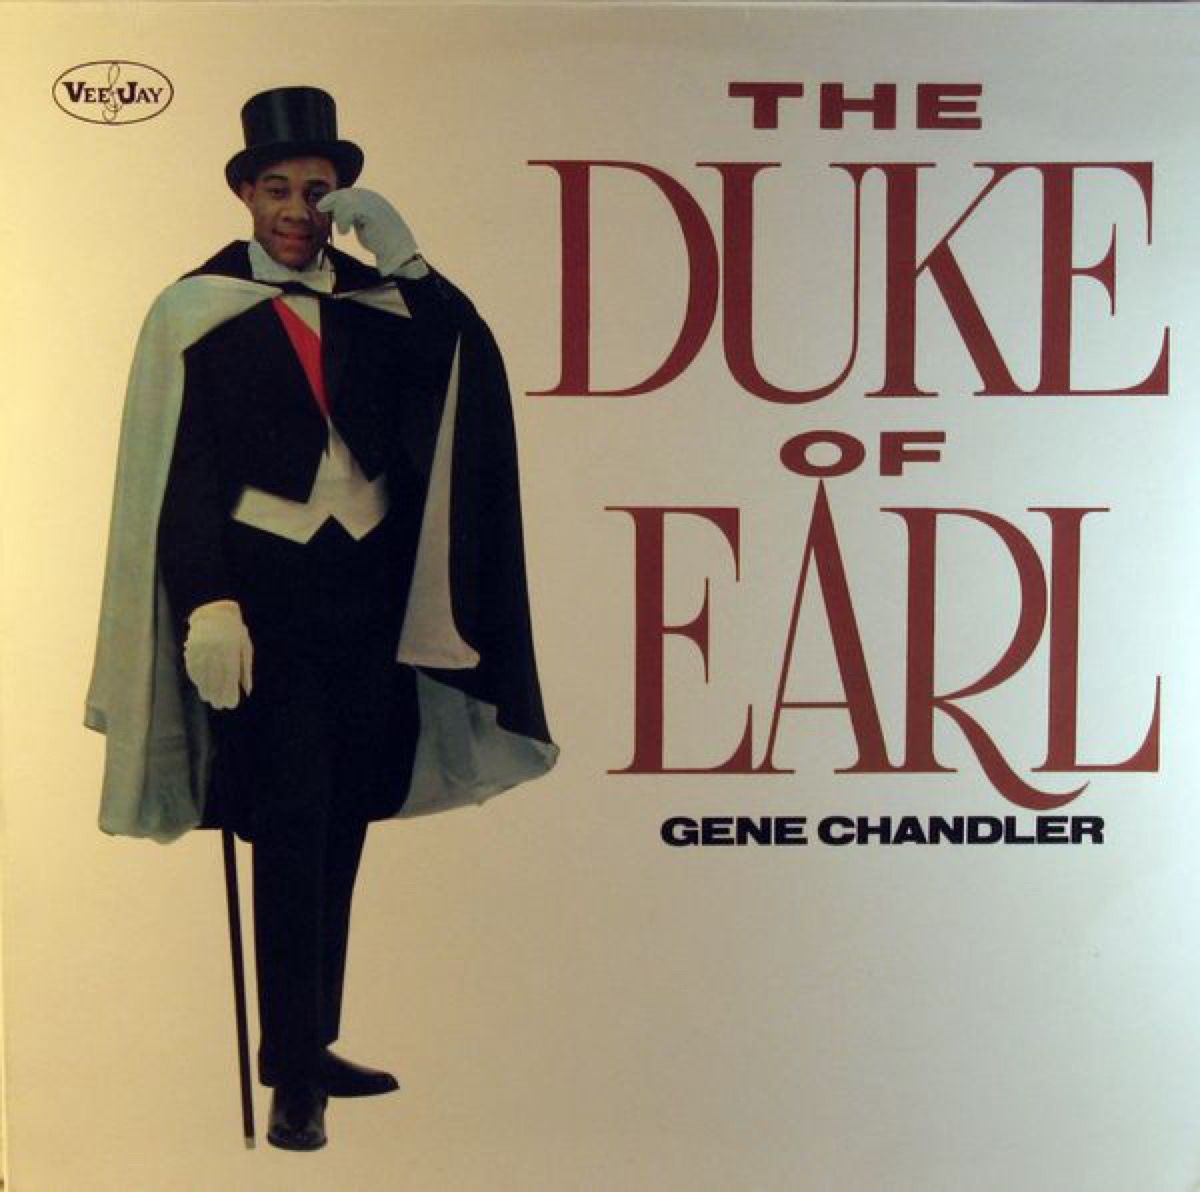 Il duca di Earl